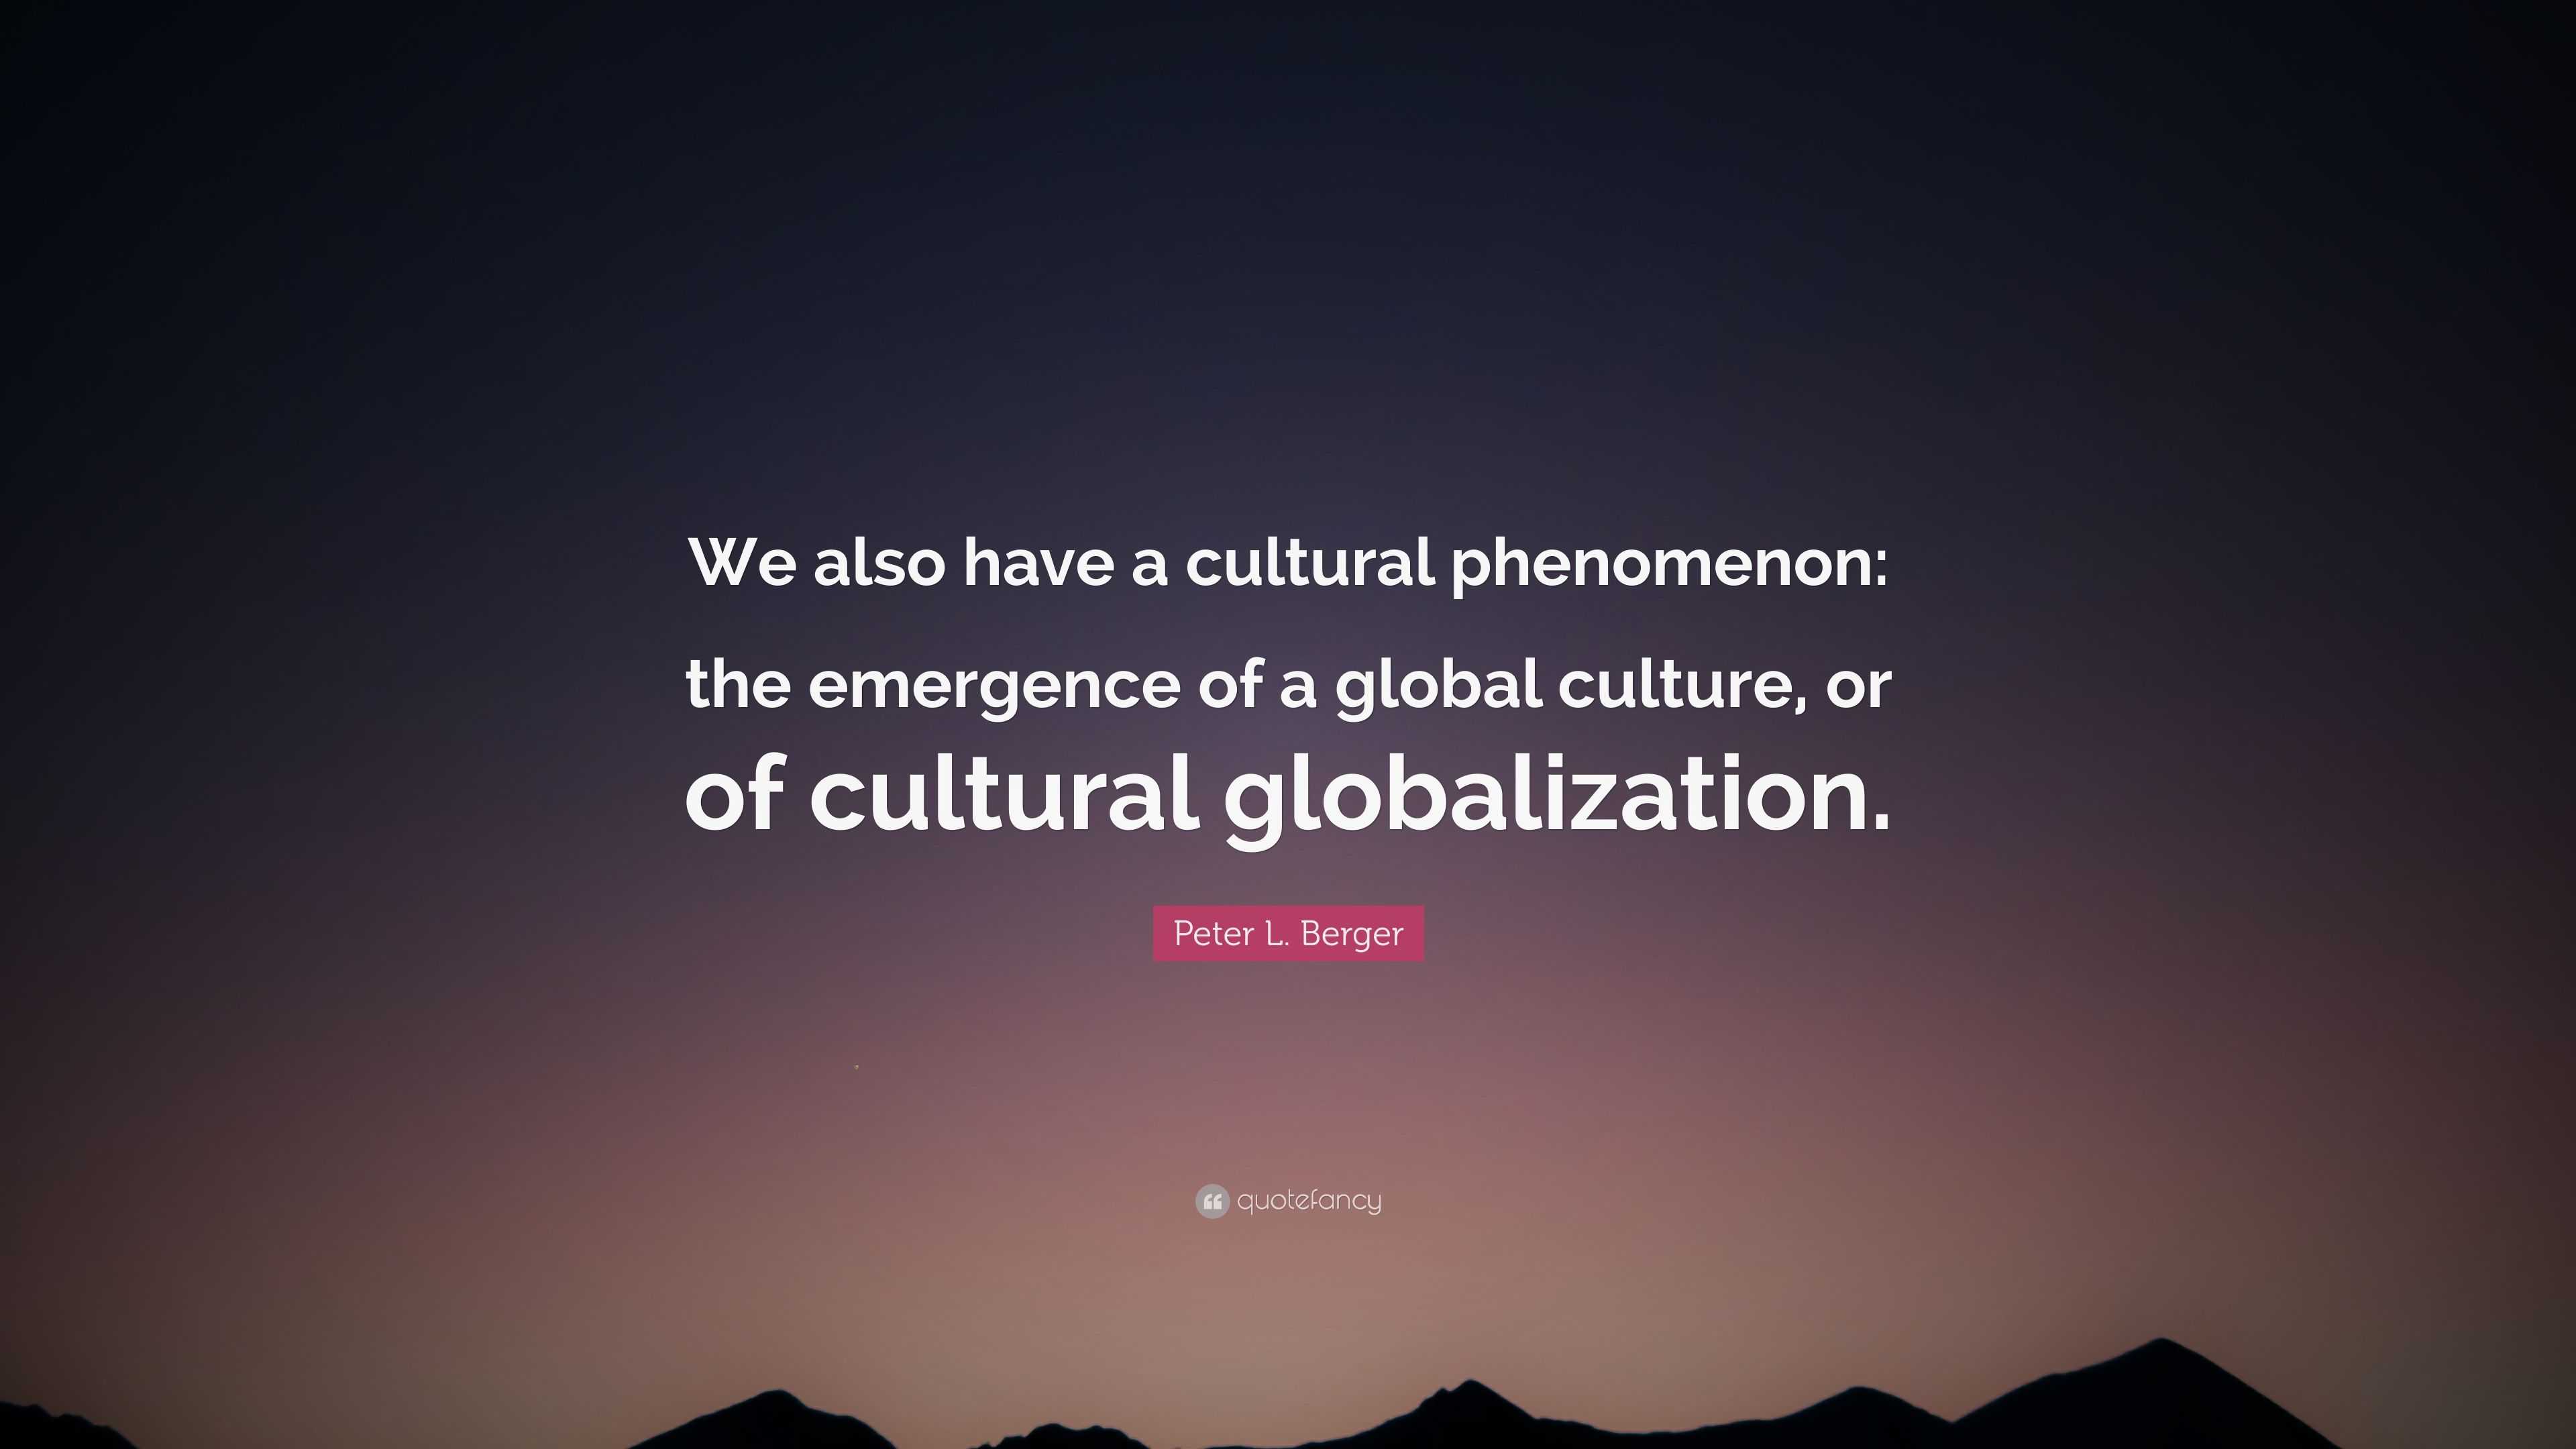 A cultural phenomenon